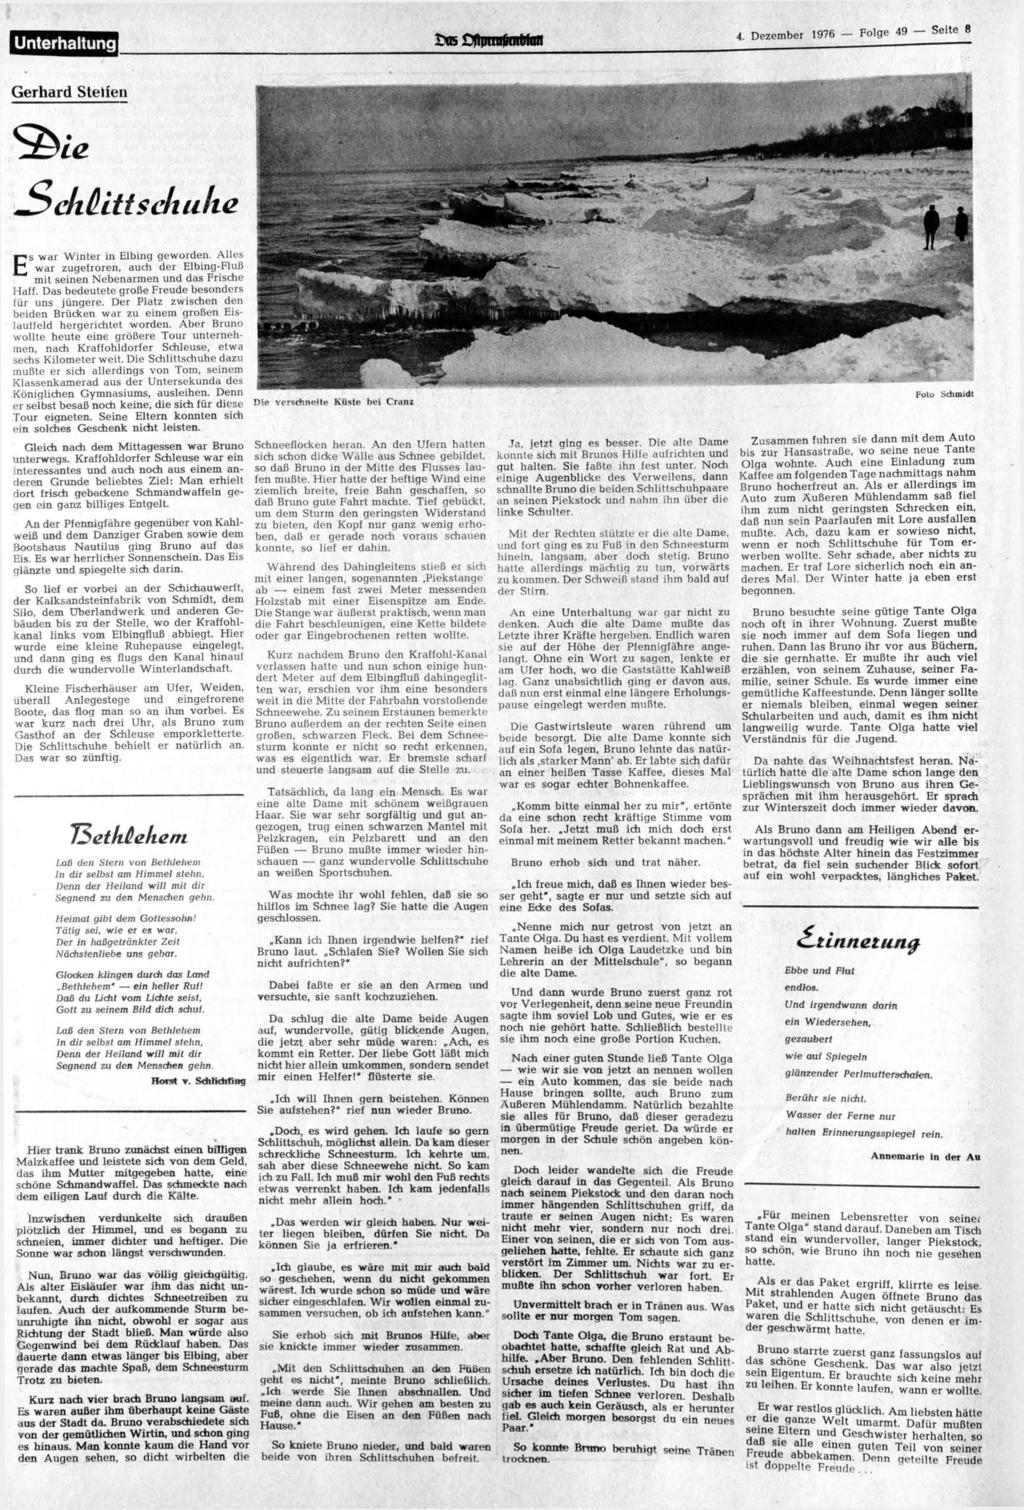 4. Dezember 1976 - Folge 49 - Seite 8 Gerhard Steifen +SekHltt schulte Es war Winter in Elbing geworden. Alles war zugefroren, auch der Elbing-Fluß mit seinen Nebenarmen und das Frische Haff.